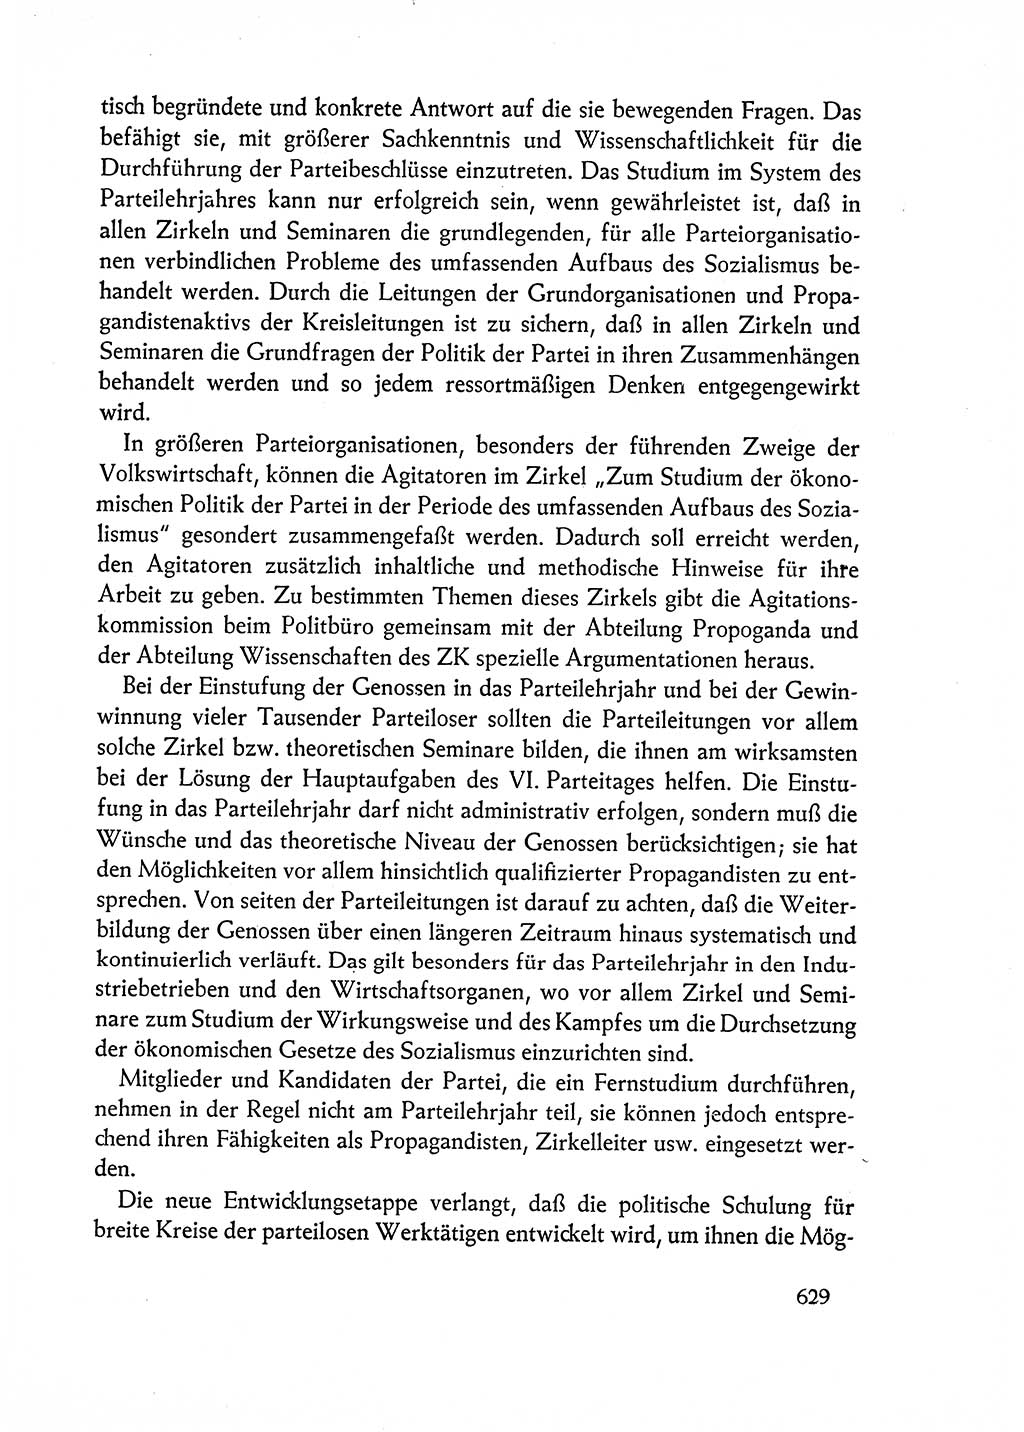 Dokumente der Sozialistischen Einheitspartei Deutschlands (SED) [Deutsche Demokratische Republik (DDR)] 1962-1963, Seite 629 (Dok. SED DDR 1962-1963, S. 629)